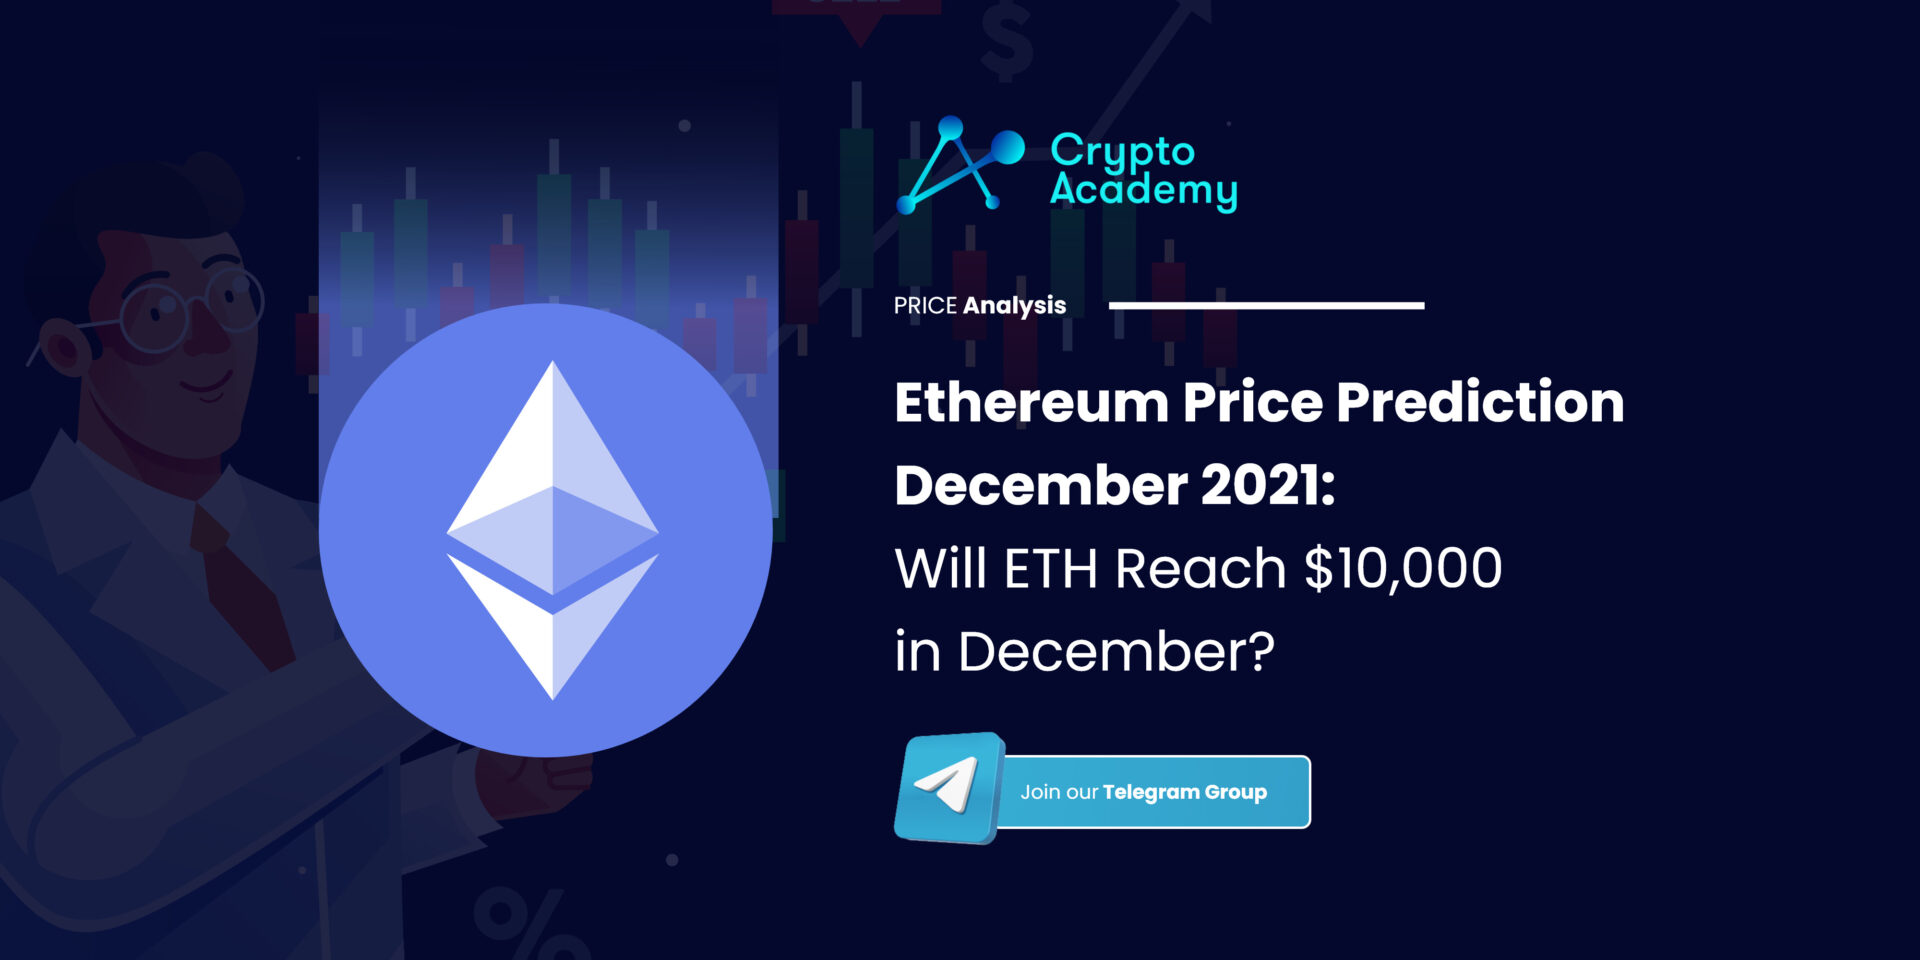 Ethereum Price Prediction December 2021: Will ETH Reach $10,000 in December?